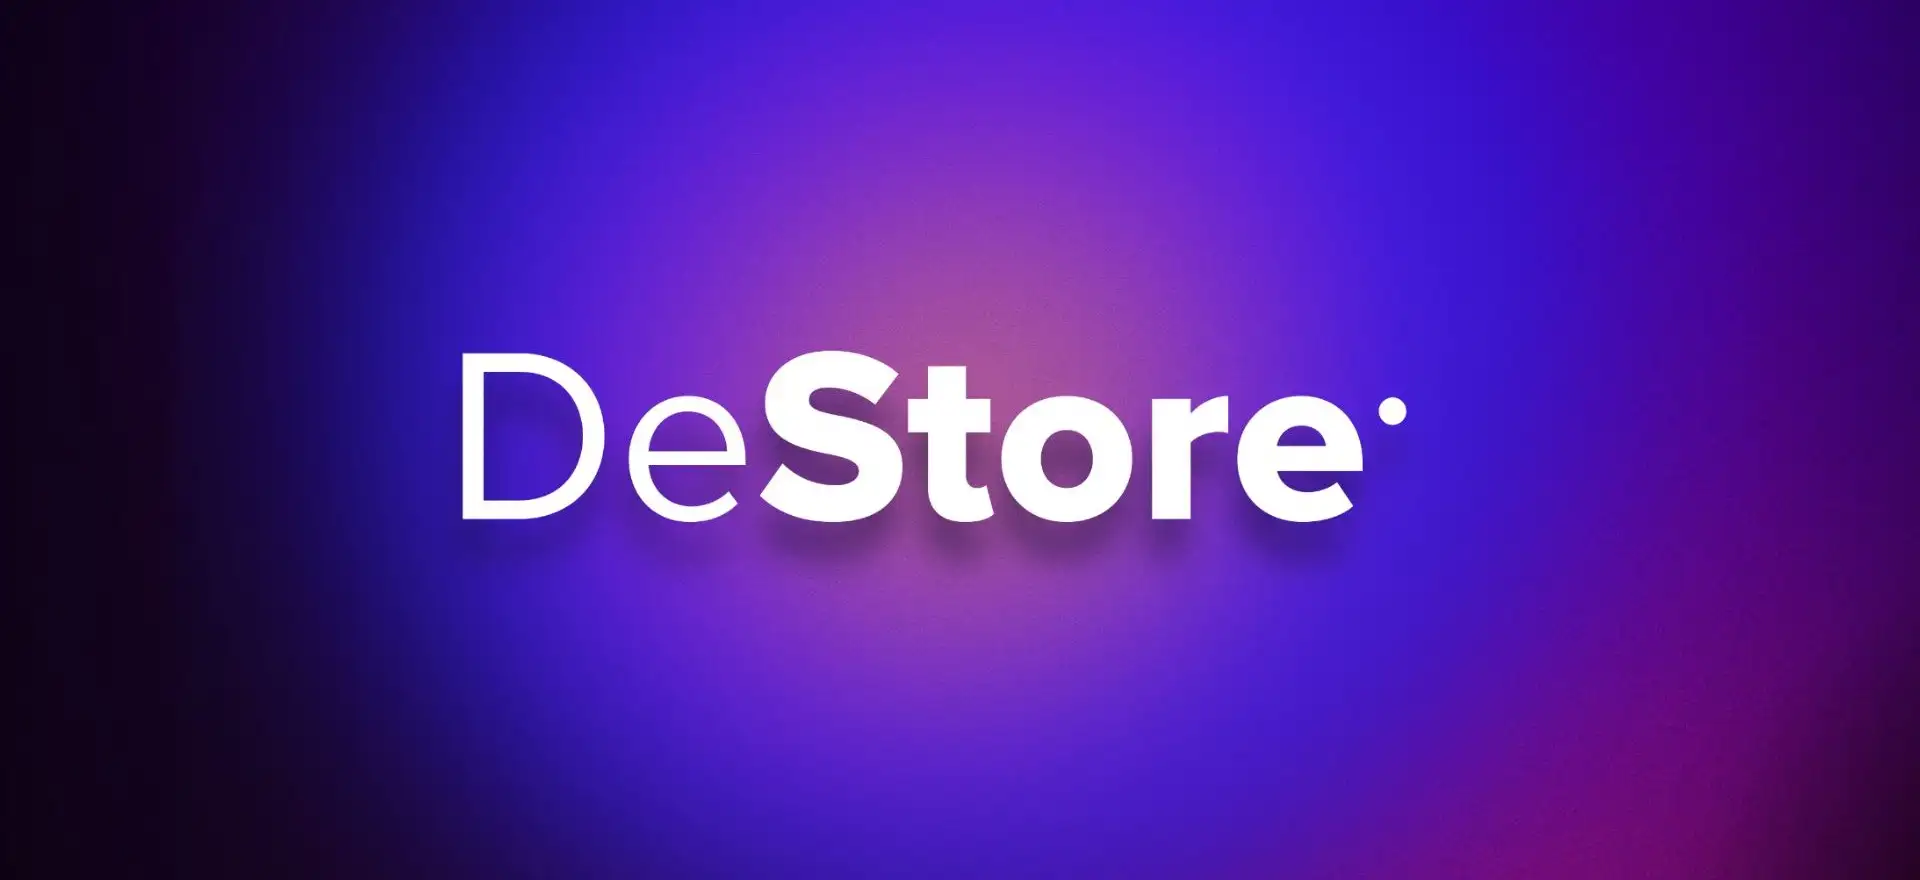 DeStore Network